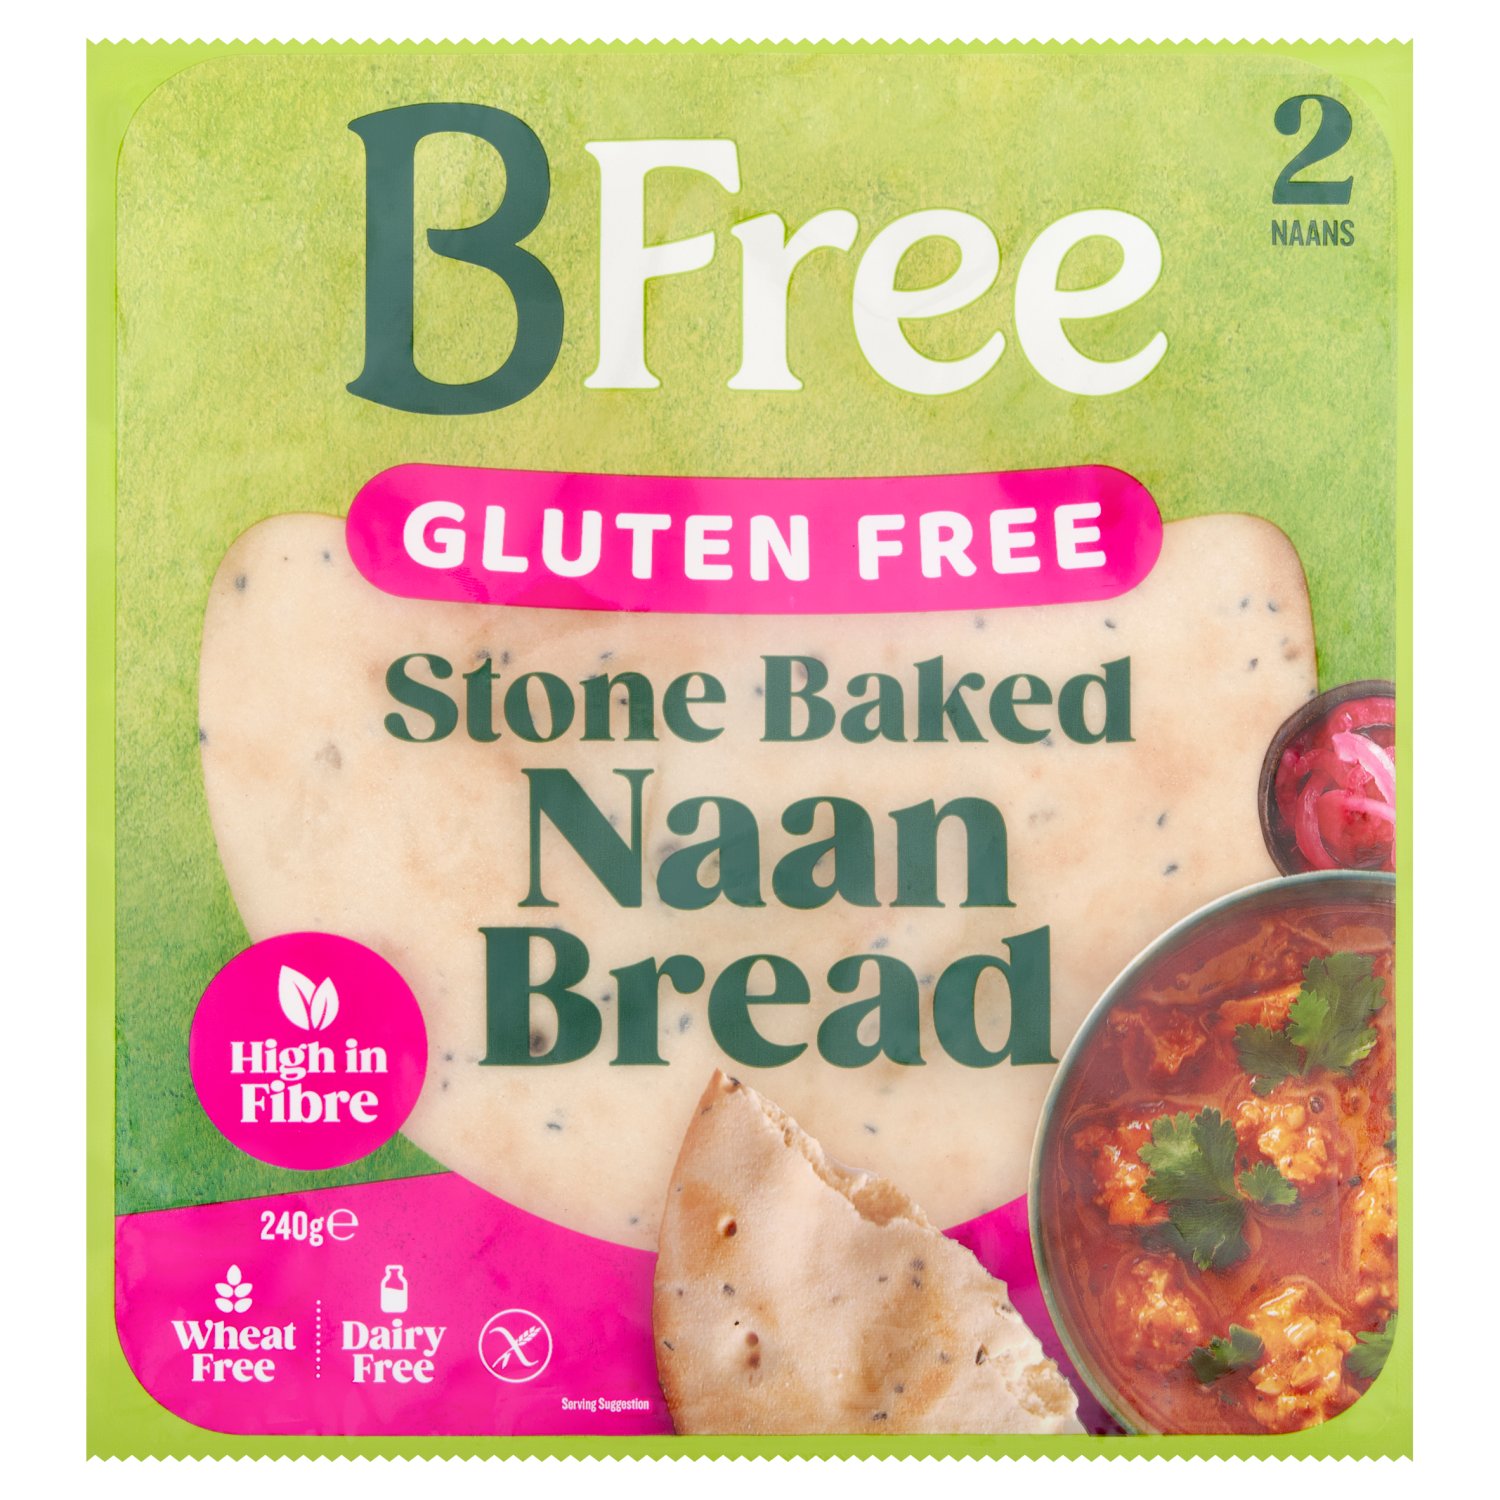 Bfree Gluten Free Naan Bread (240 g)